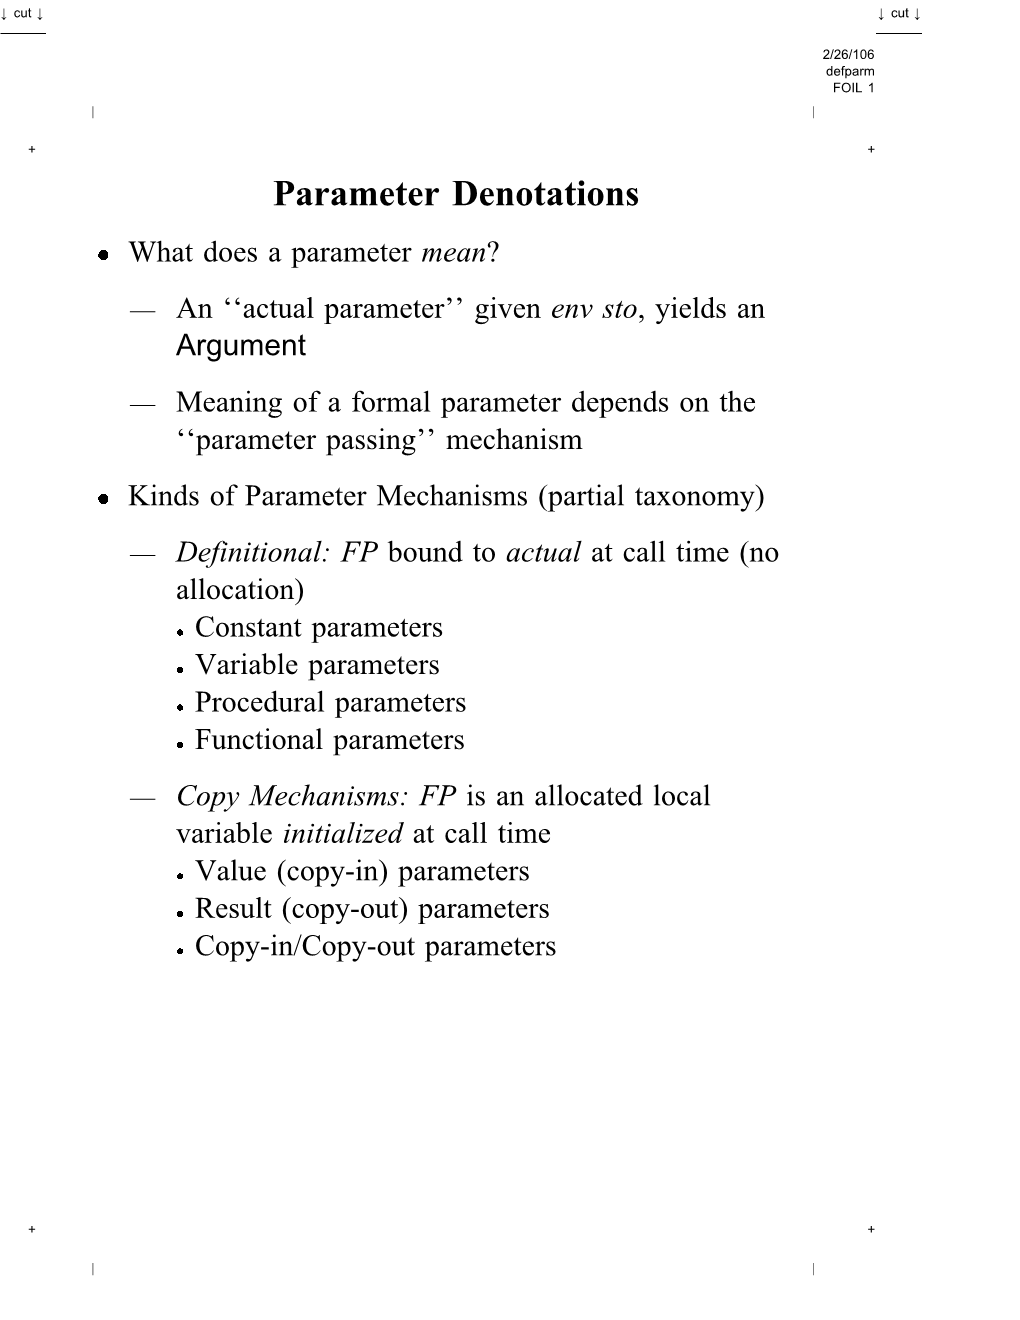 Parameter Denotations 7(Pdf)